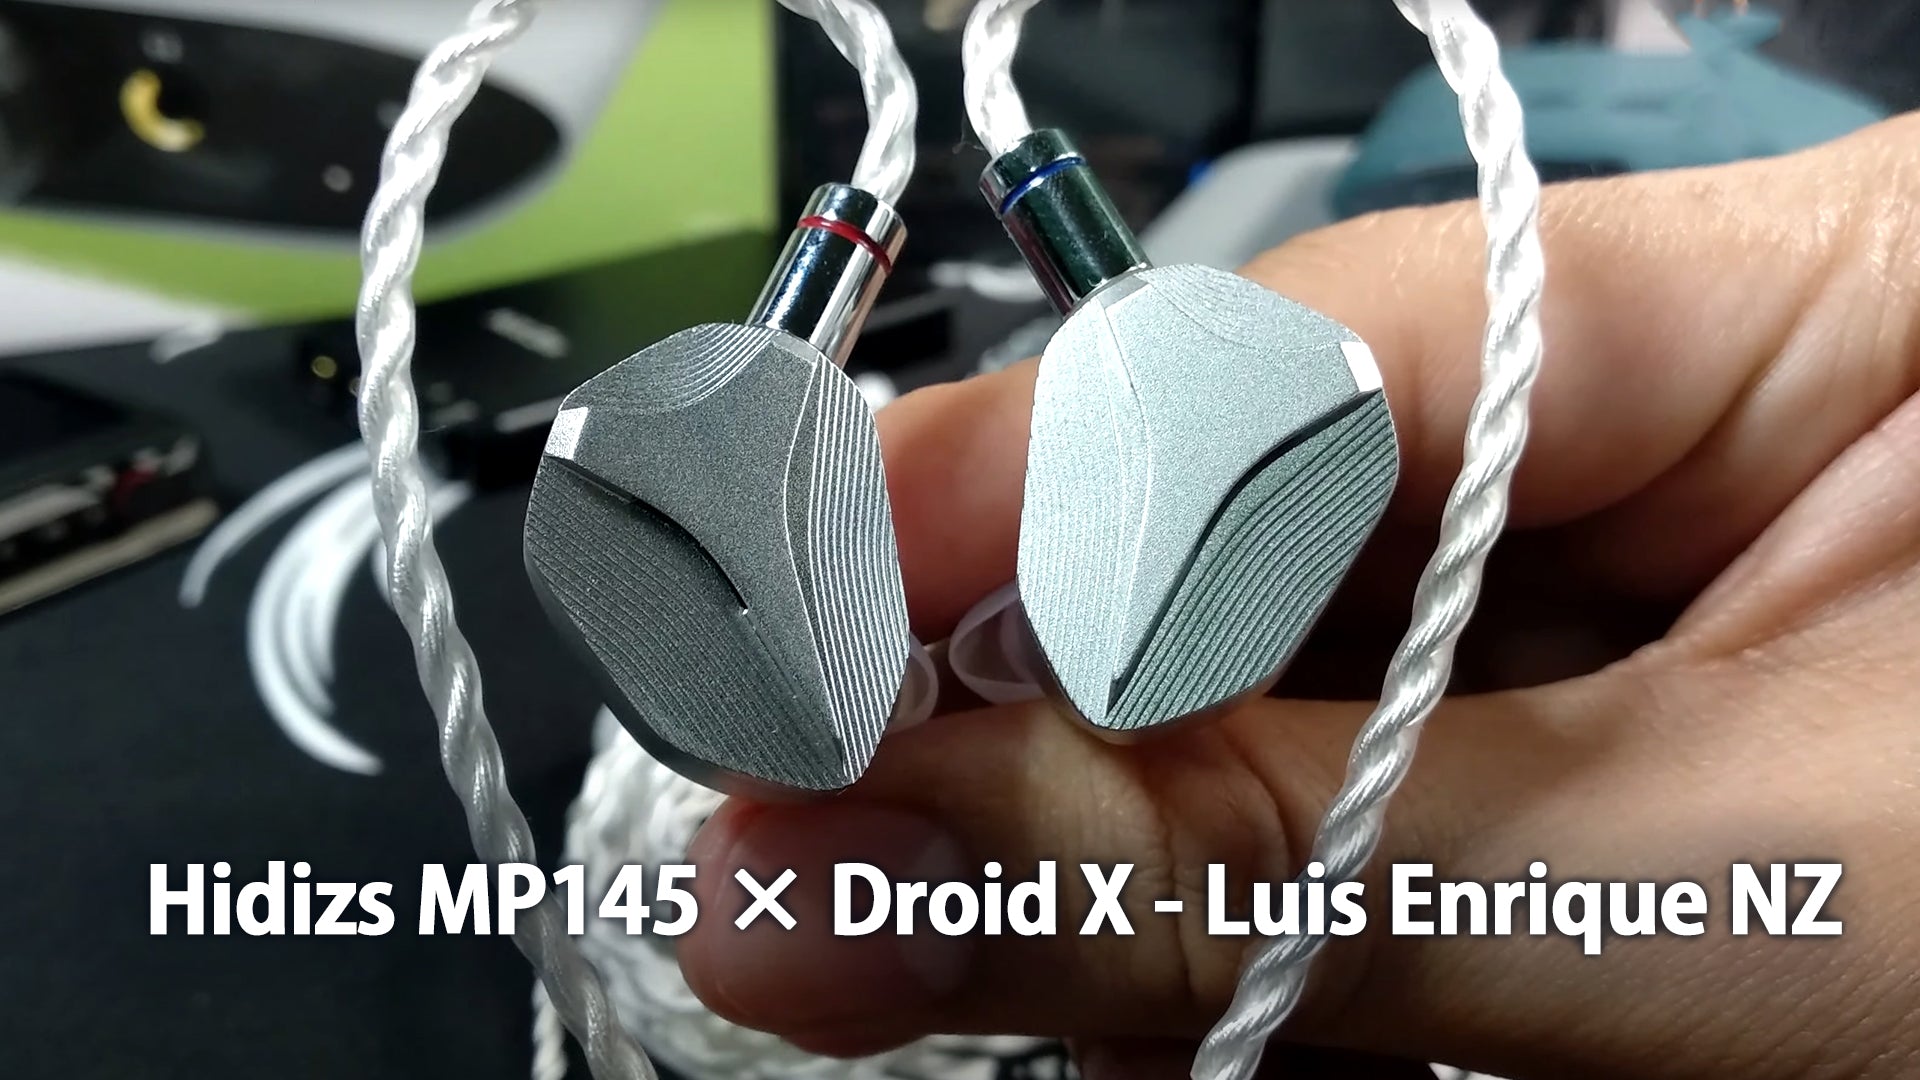 Hidizs MP145 Review - Droid X - Luis Enrique NZ